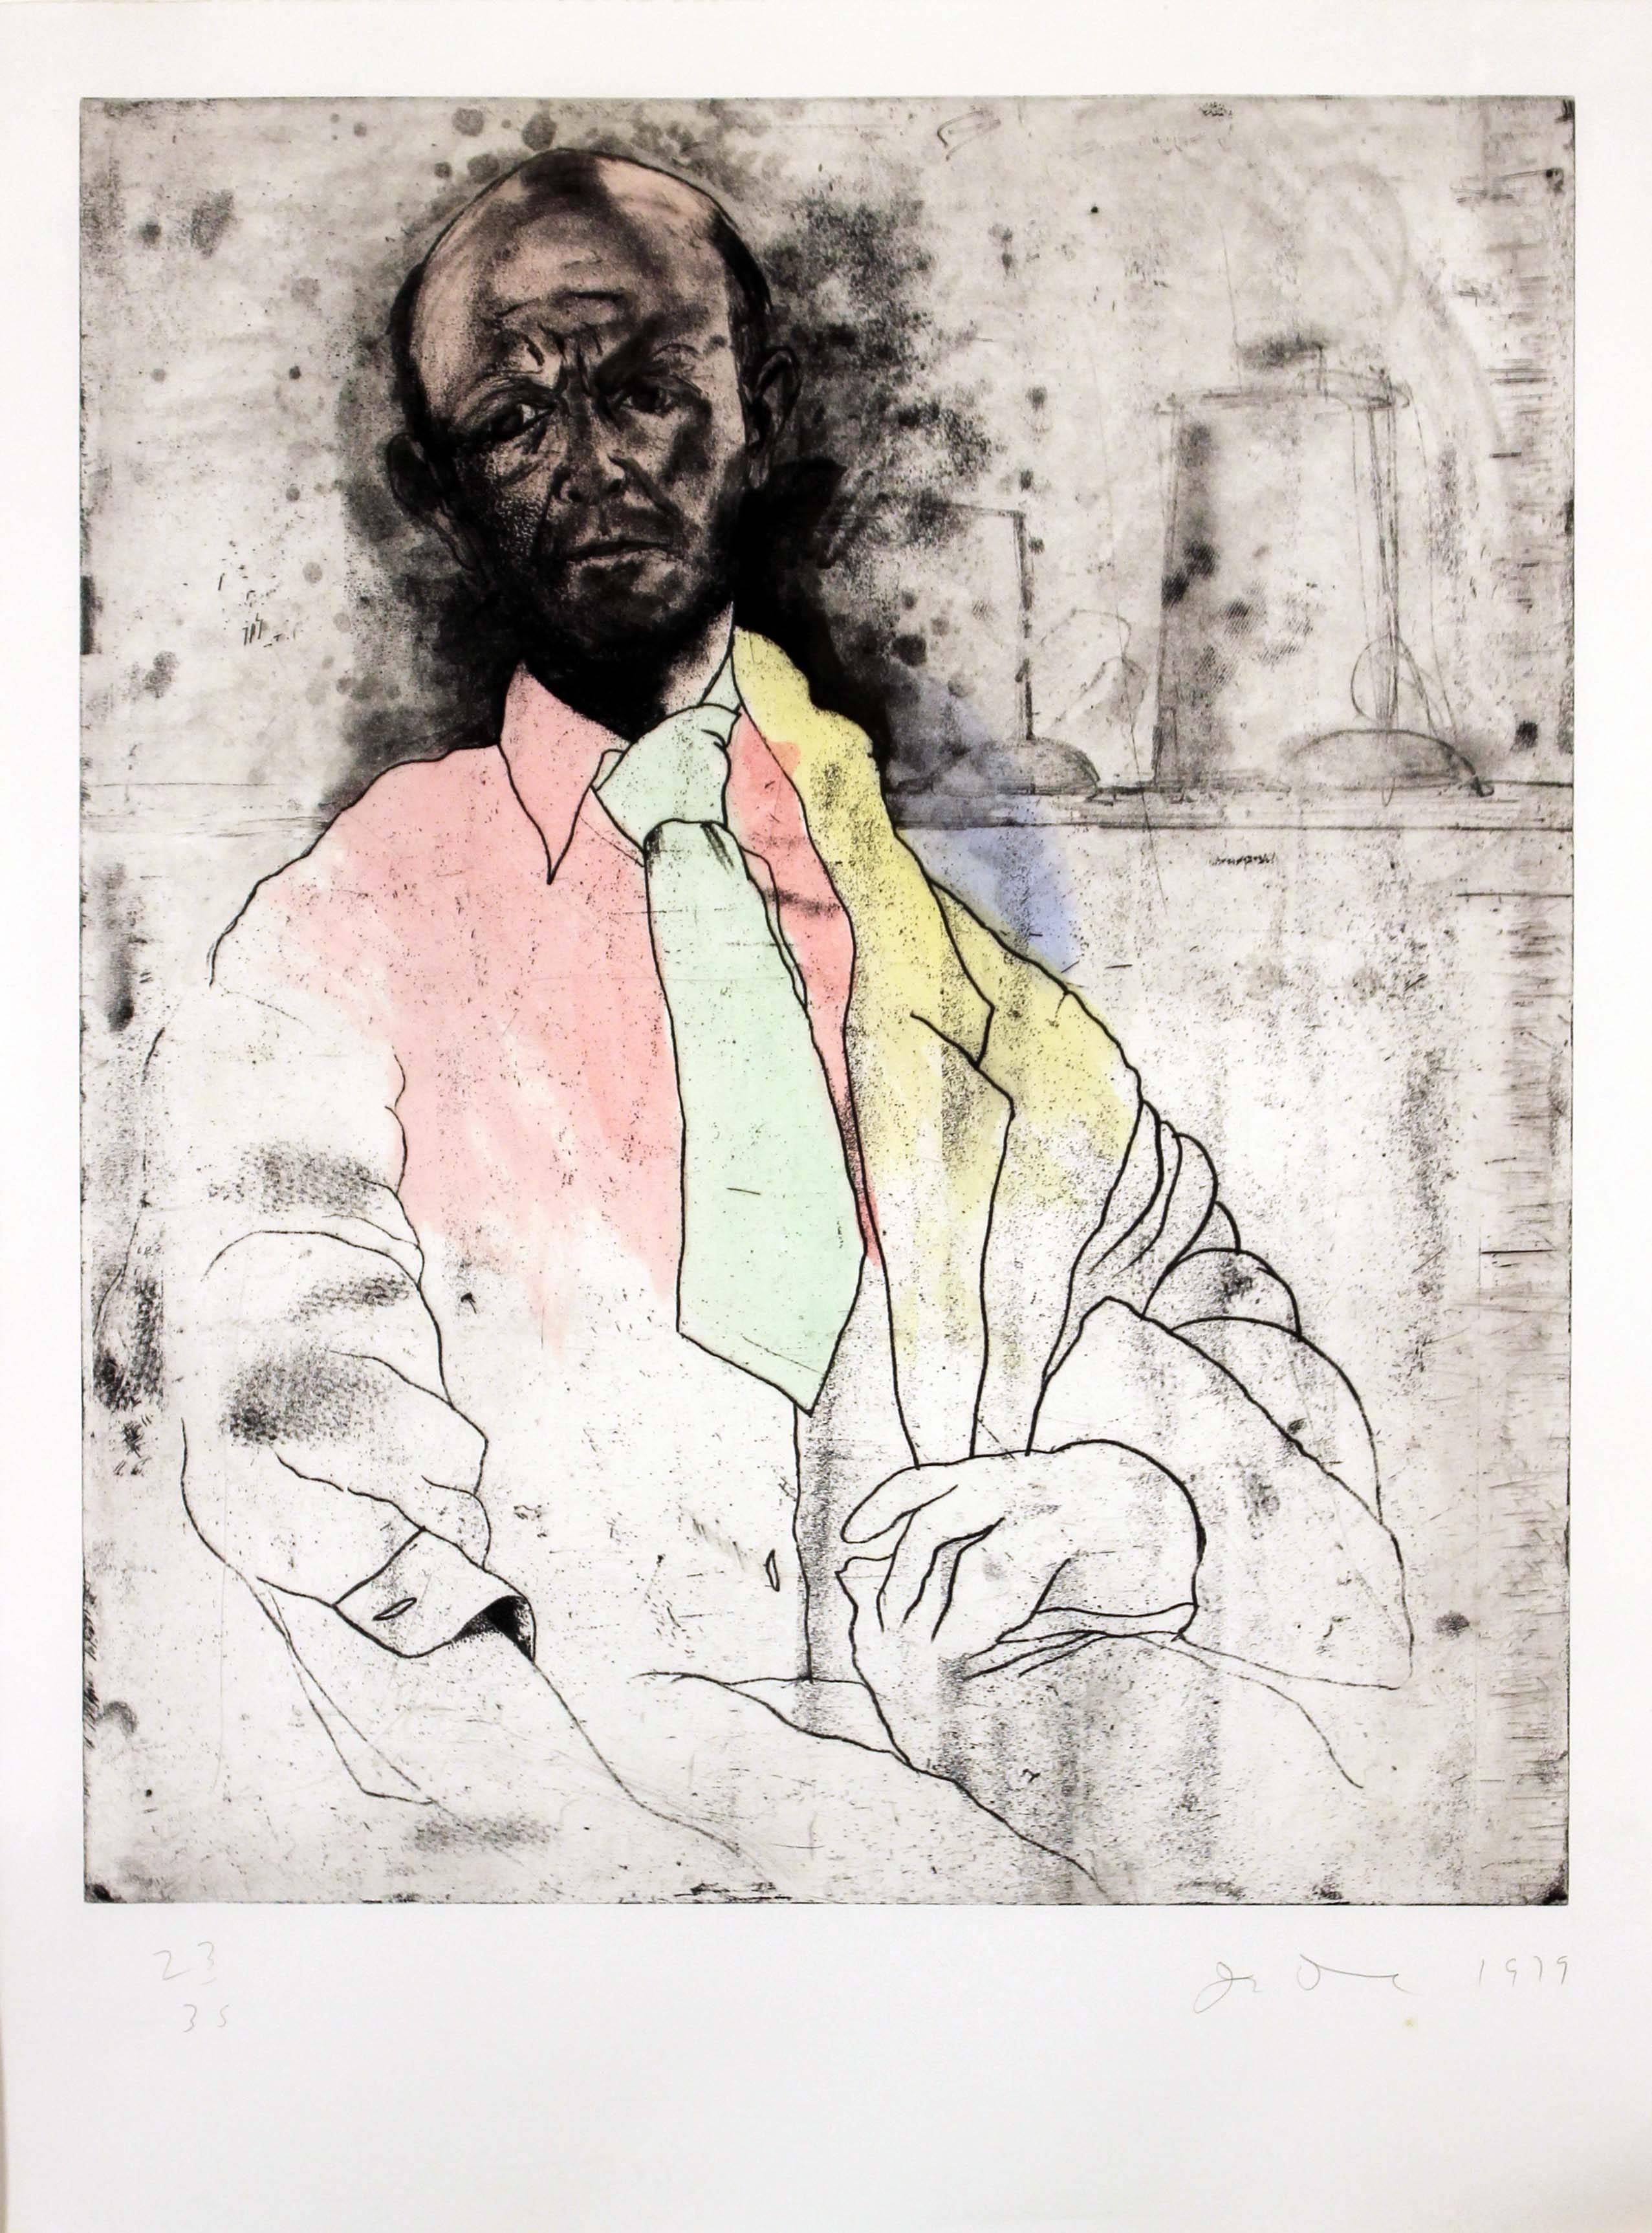 Self Portrait as Die Maker - Print by Jim Dine